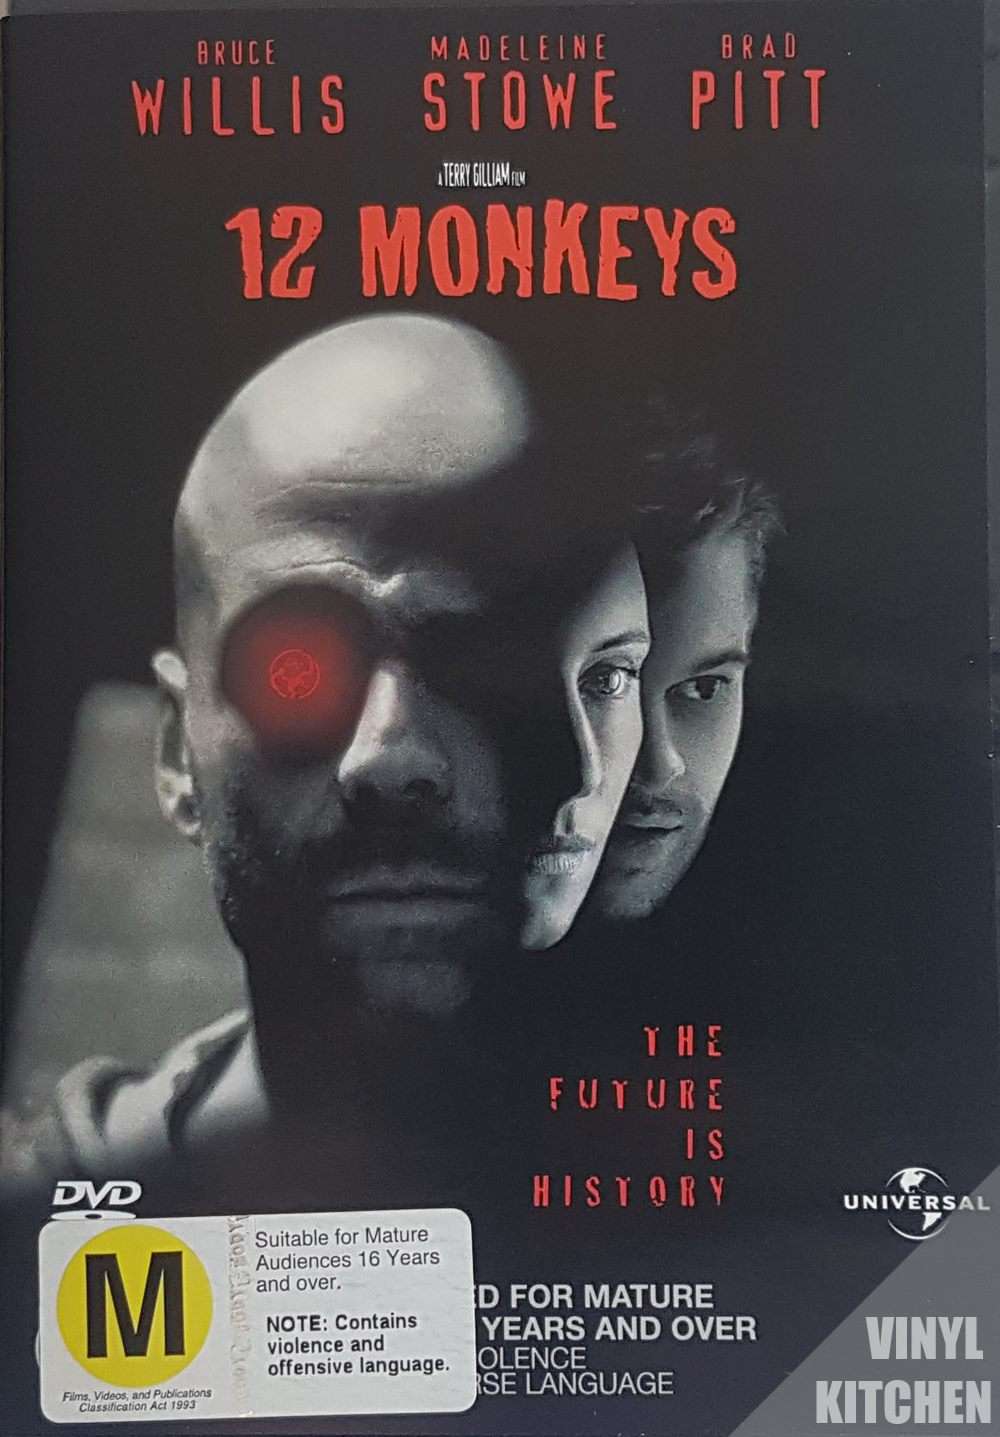 12 Monkeys - Vinyl Kitchen